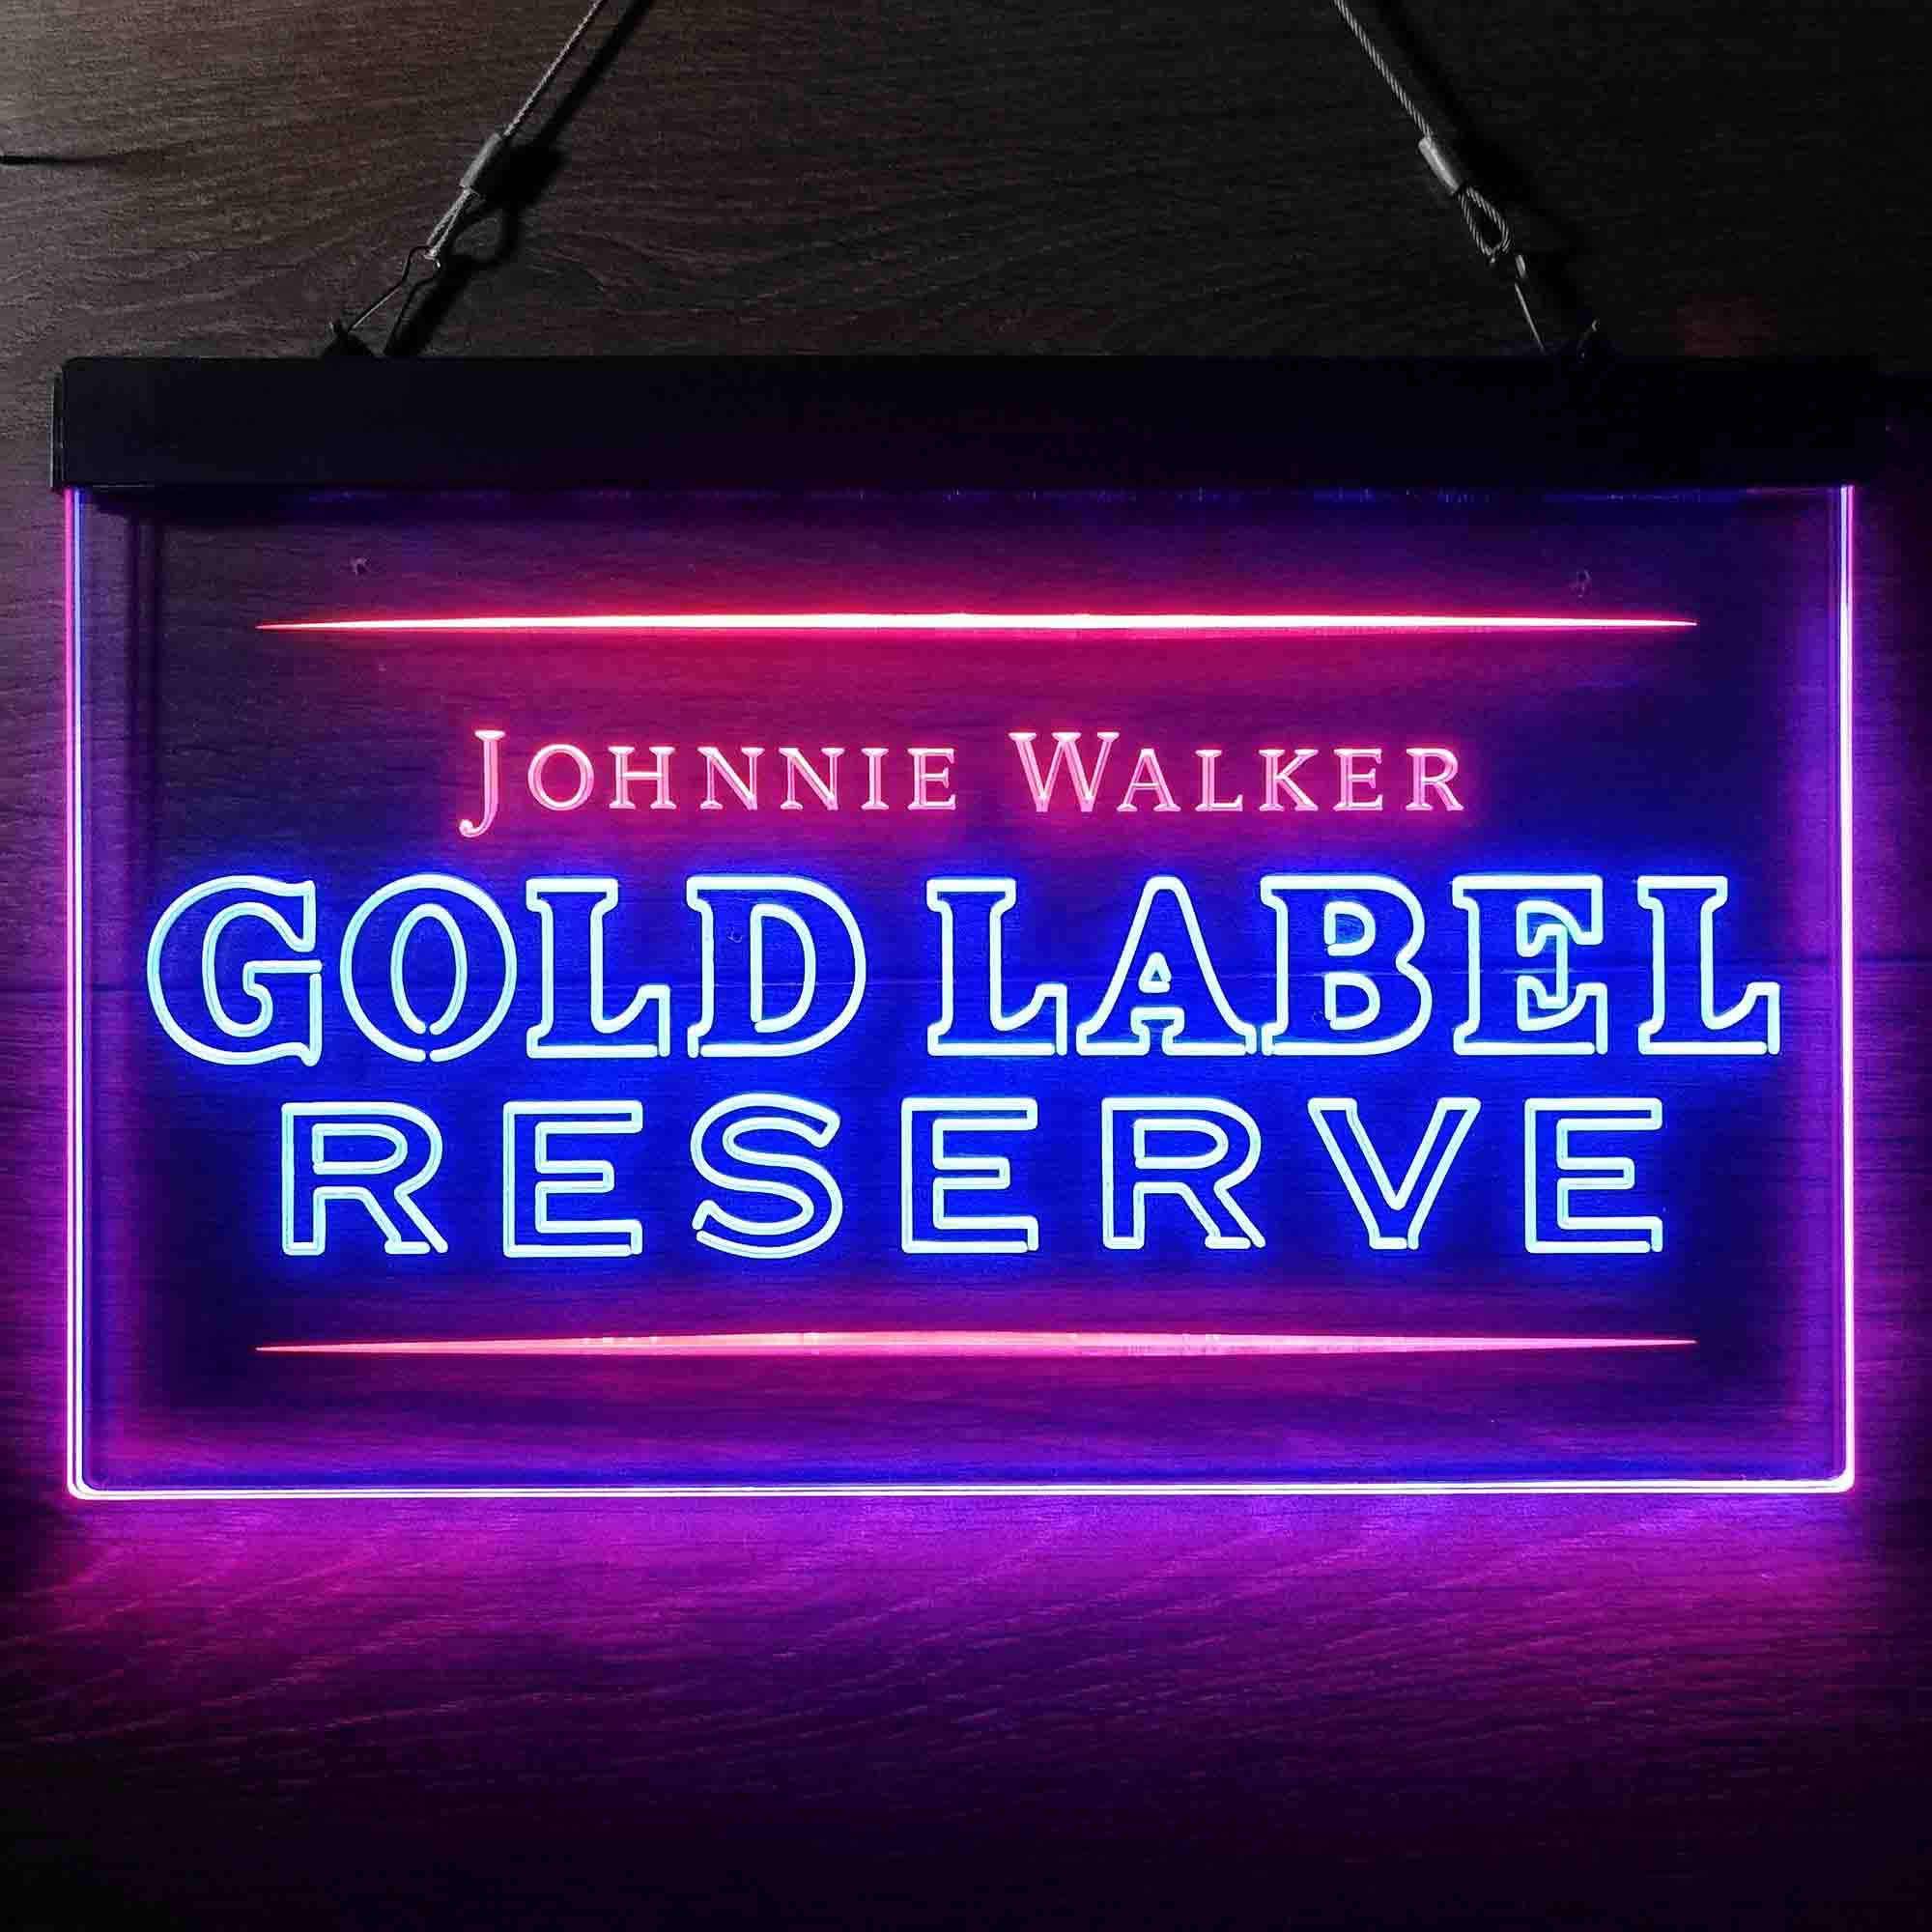 Johnnie Walker Gold Label Reserve Neon LED Sign